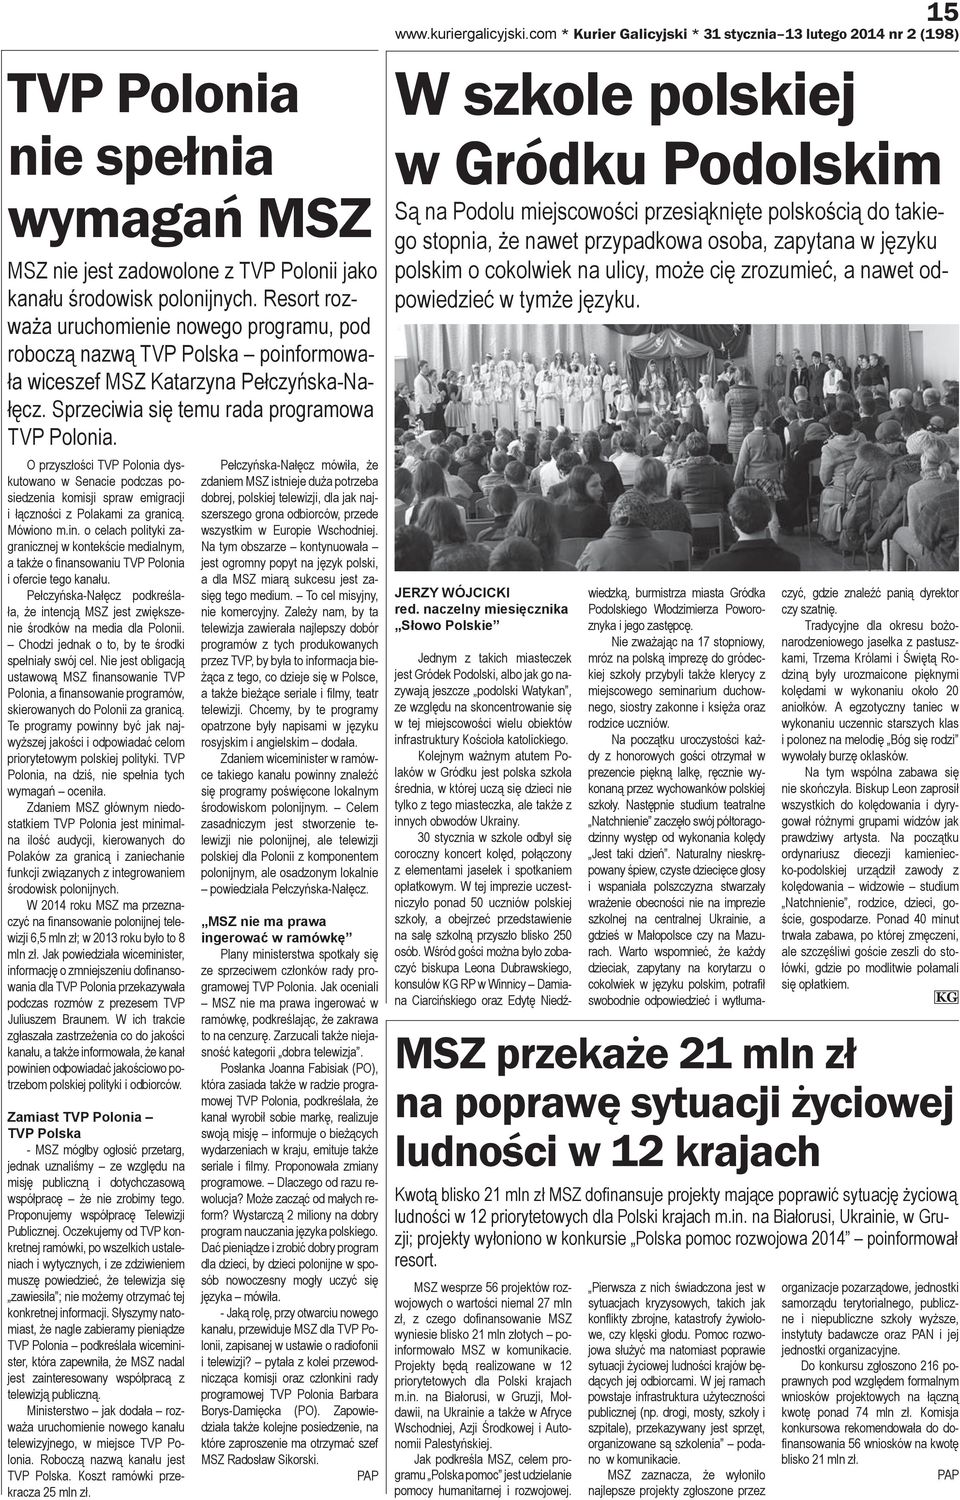 O przyszłości TVP Polonia dyskutowano w Senacie podczas posiedzenia komisji spraw emigracji i łączności z Polakami za granicą. Mówiono m.in.